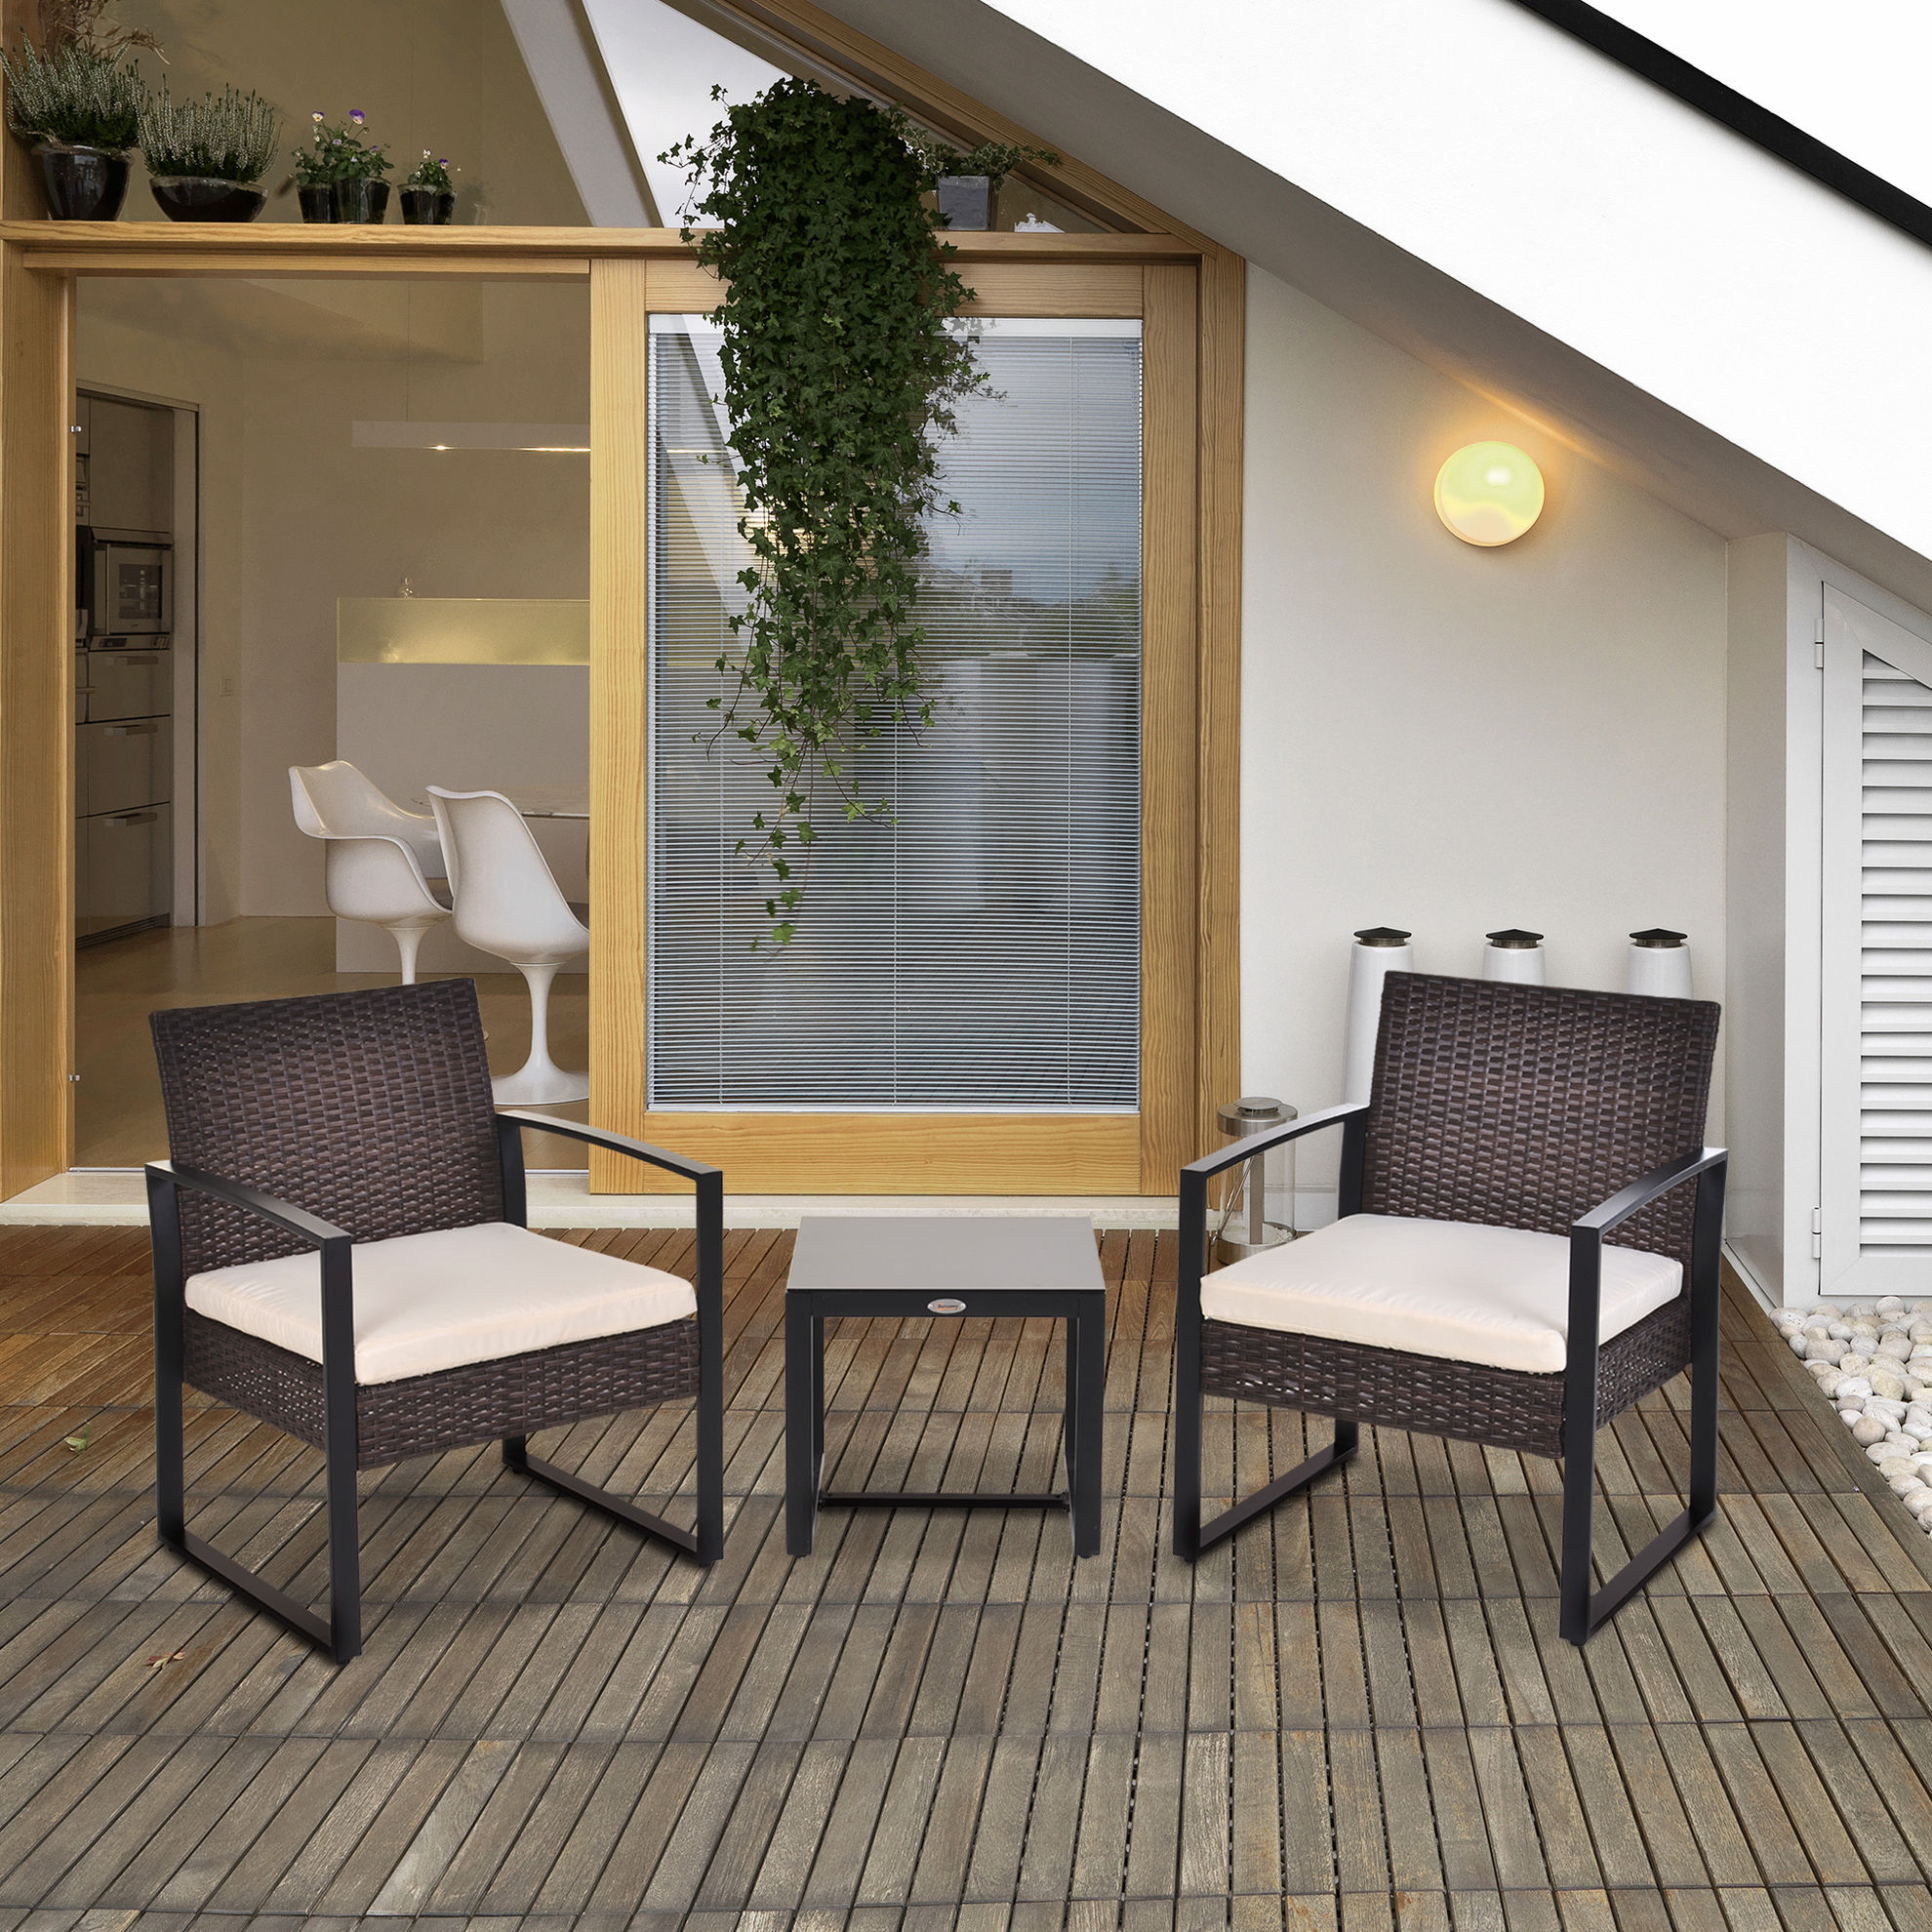 Gartenmöbel-Set mit Armlehne braun Farbe: braun, creme | Weltbild.de